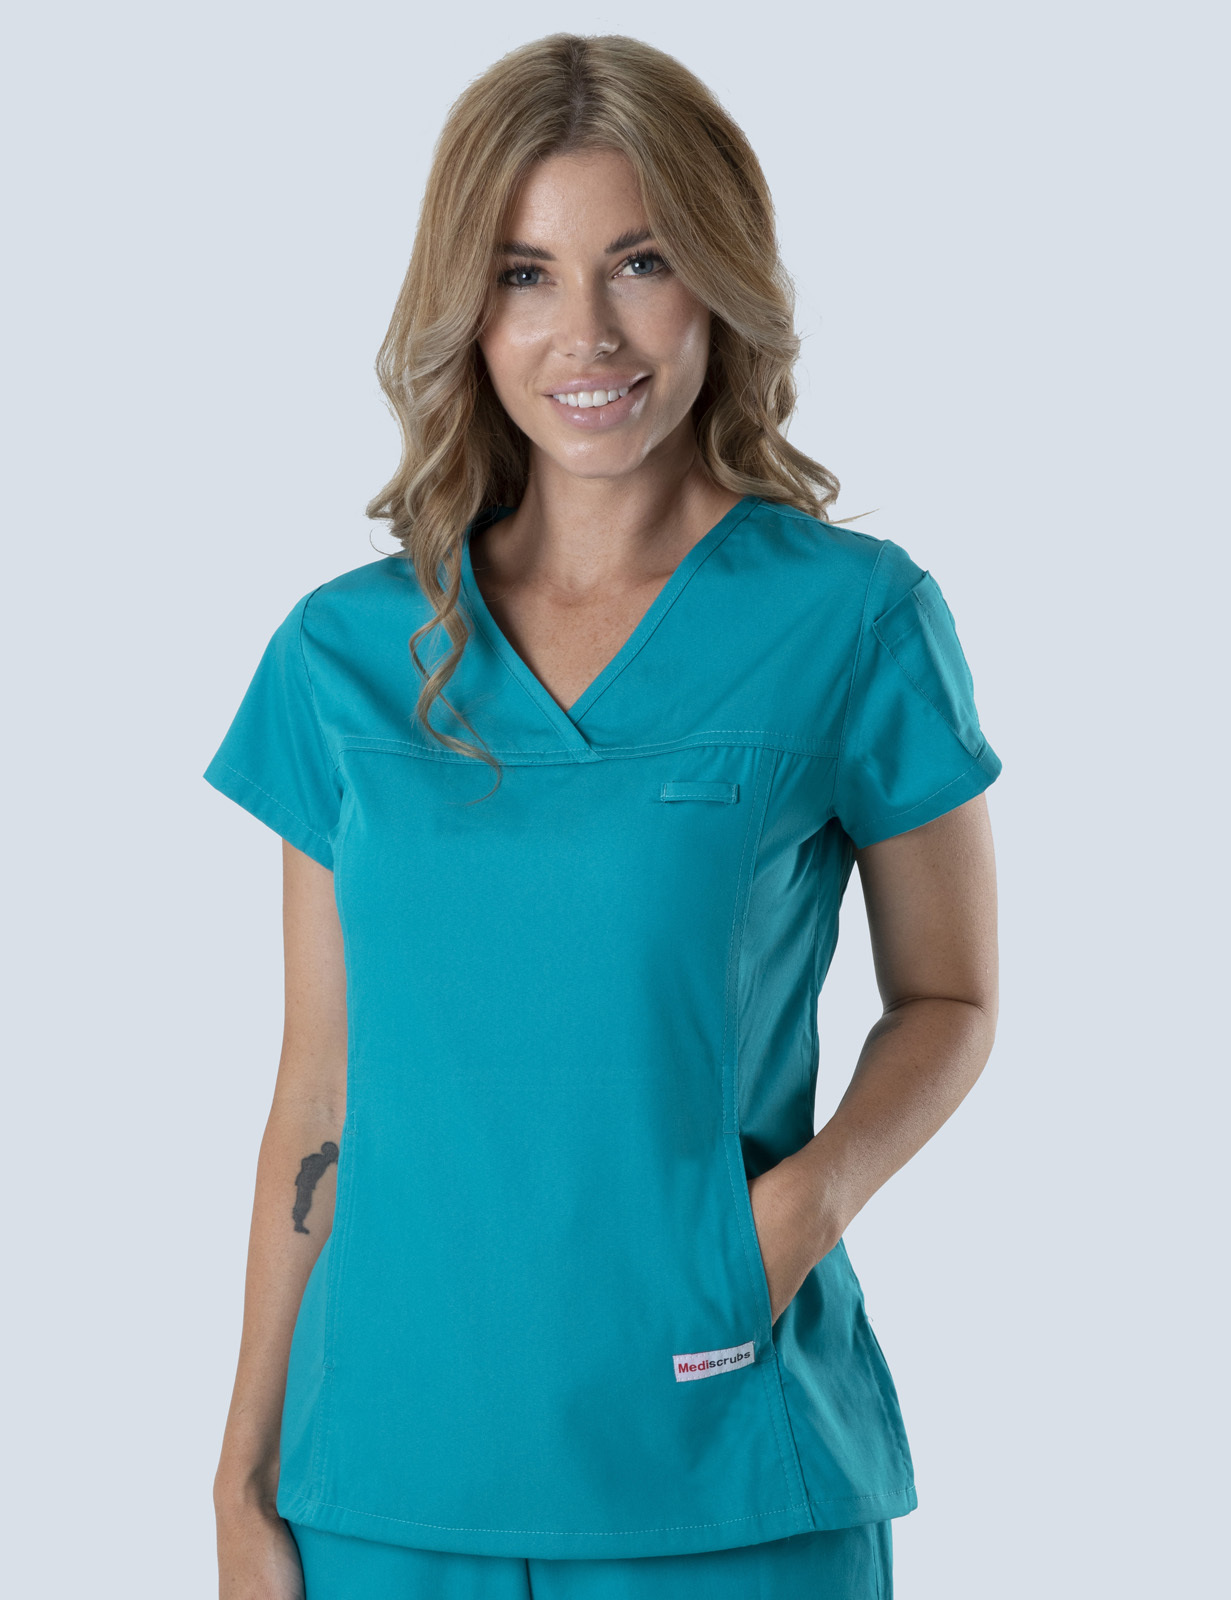 Queensland Children's Hospital Emergency Department Assistant in Nursing  Uniform Top Bundle  (Women's Fit Top in Teal incl Logos)